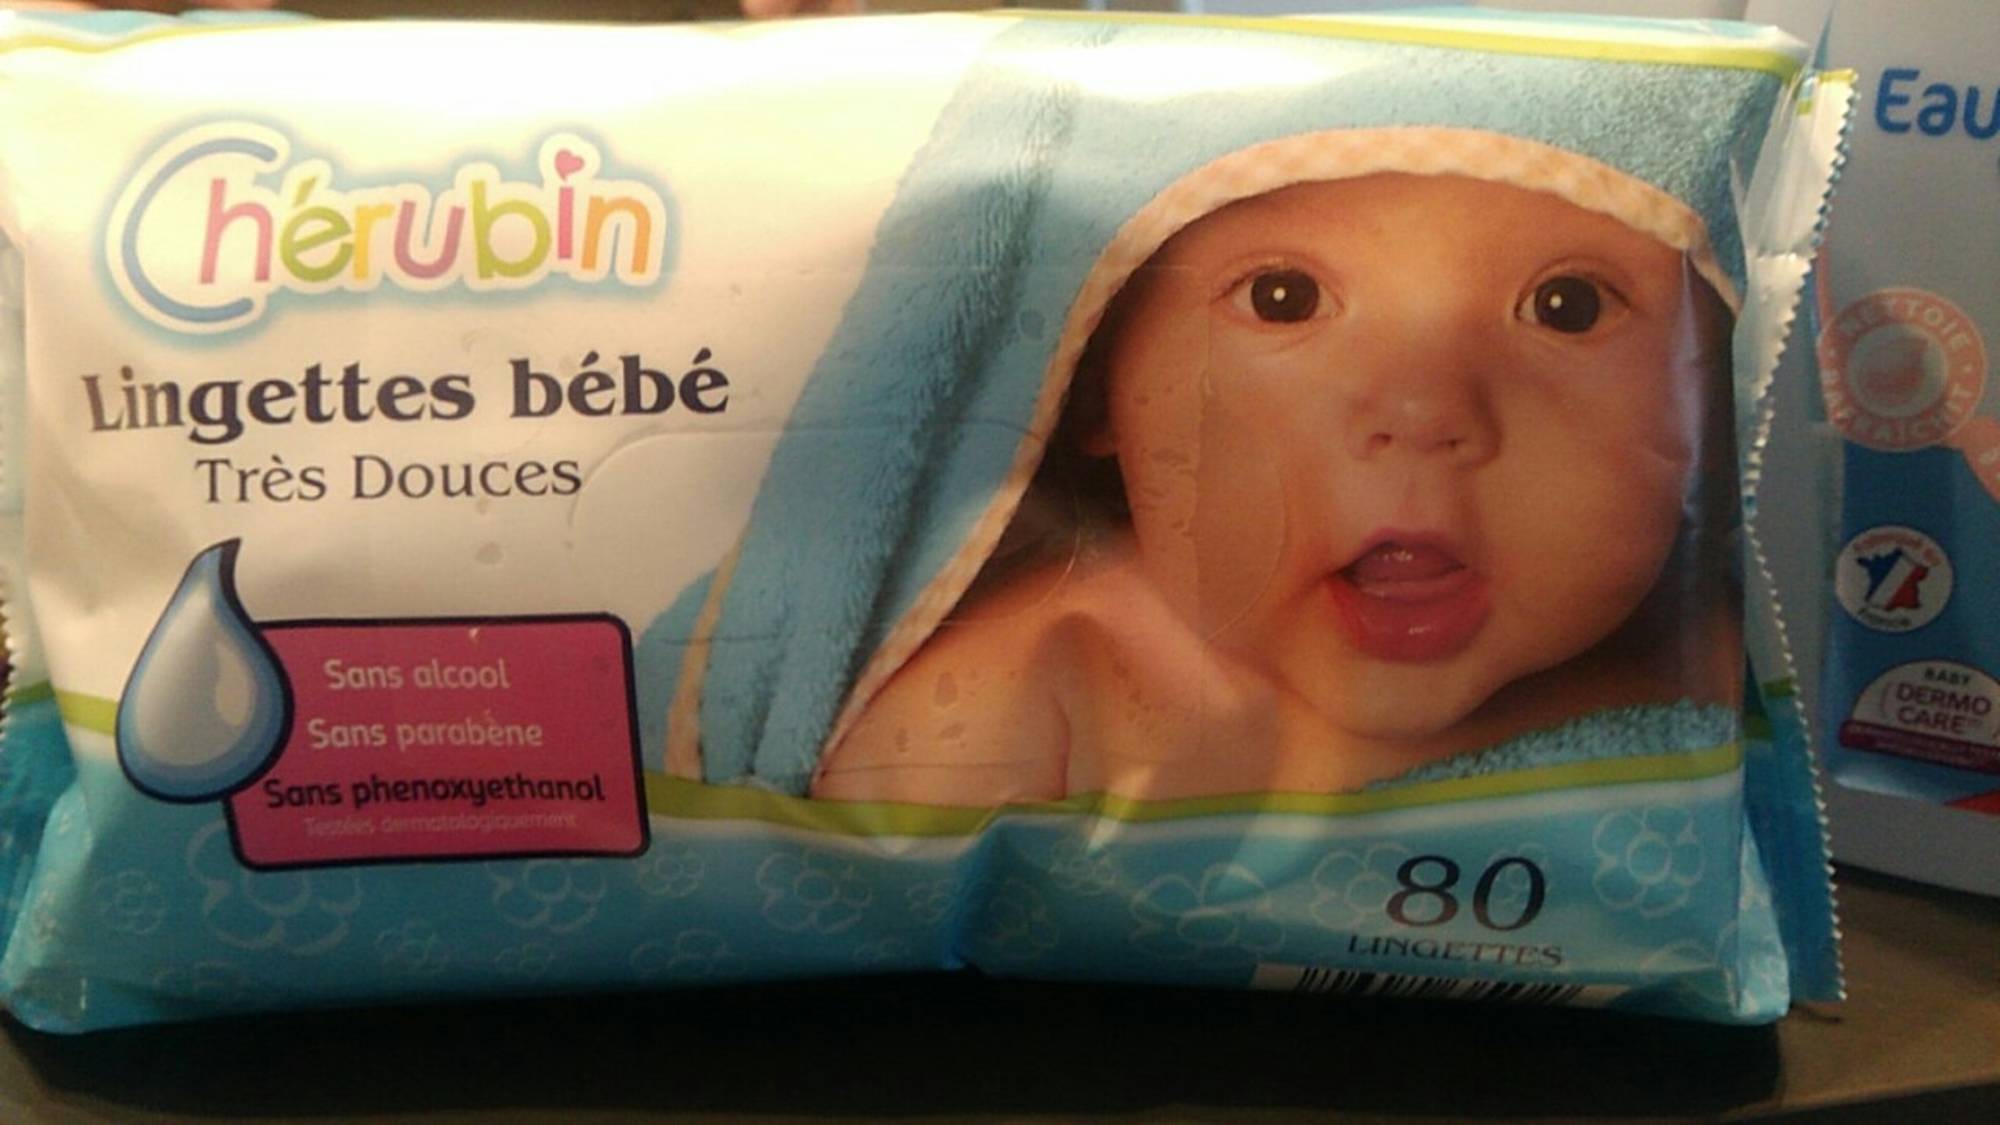 CHÉRUBIN - Lingettes bébé